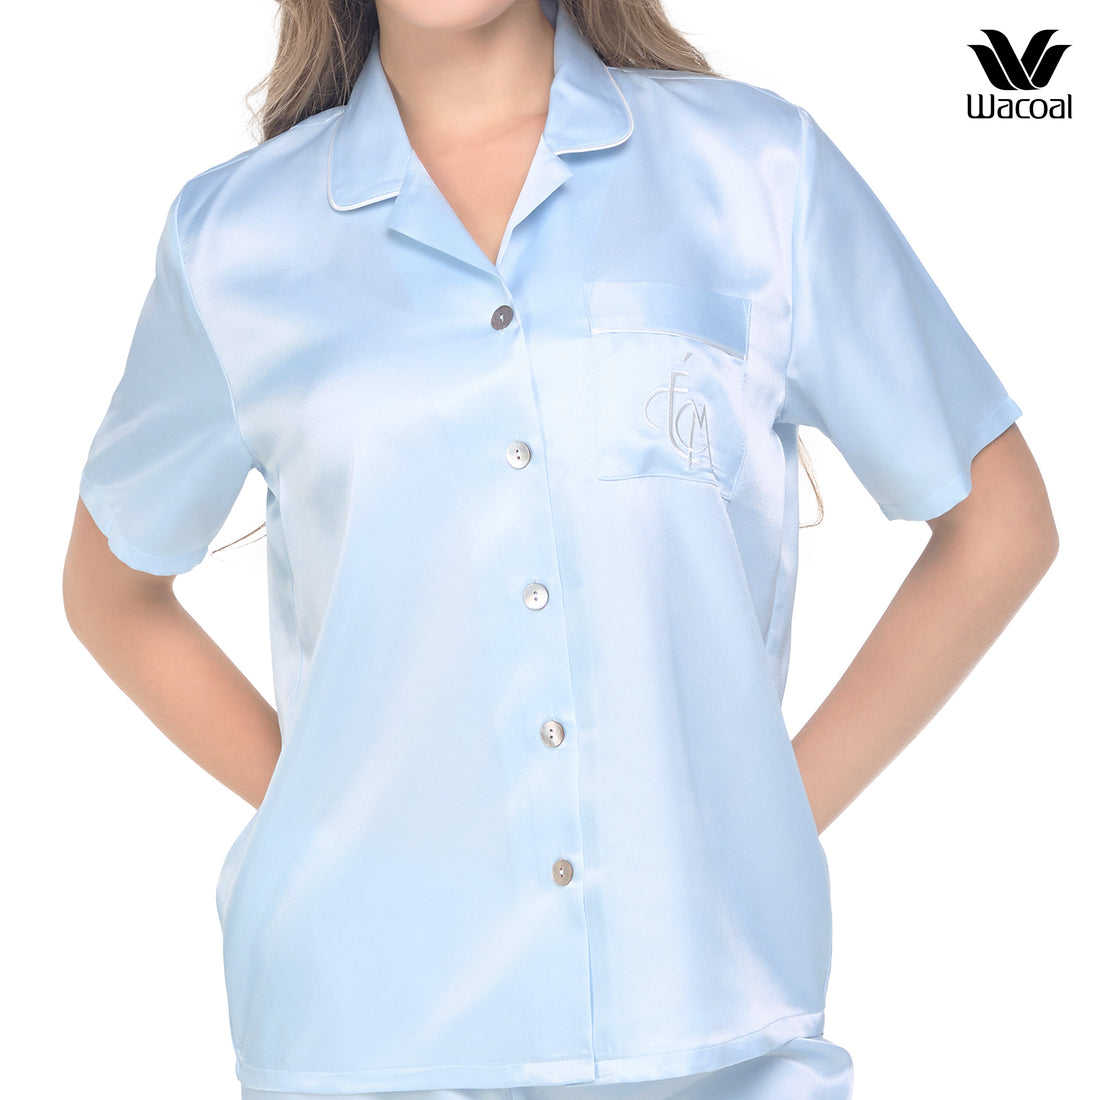 Wacoal Sleep Wear ชุดนอนผ้า Satin Set แขนสั้น ขายาว รุ่น WN7E18 สีฟ้าคราม (SM)